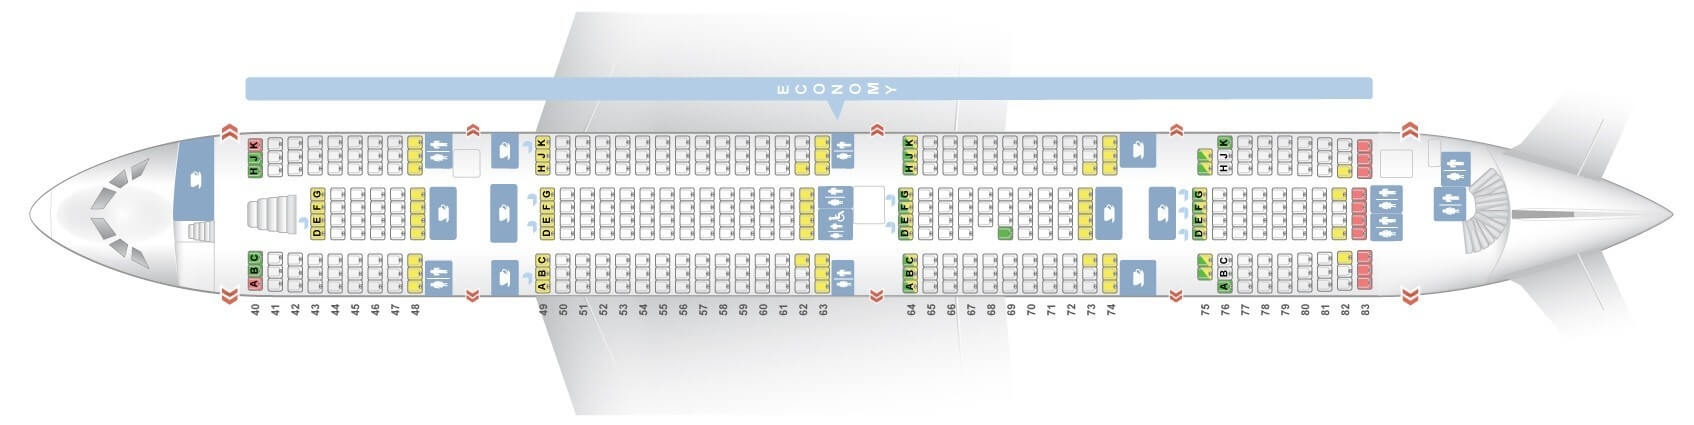 Etihad A380 Seating Plan